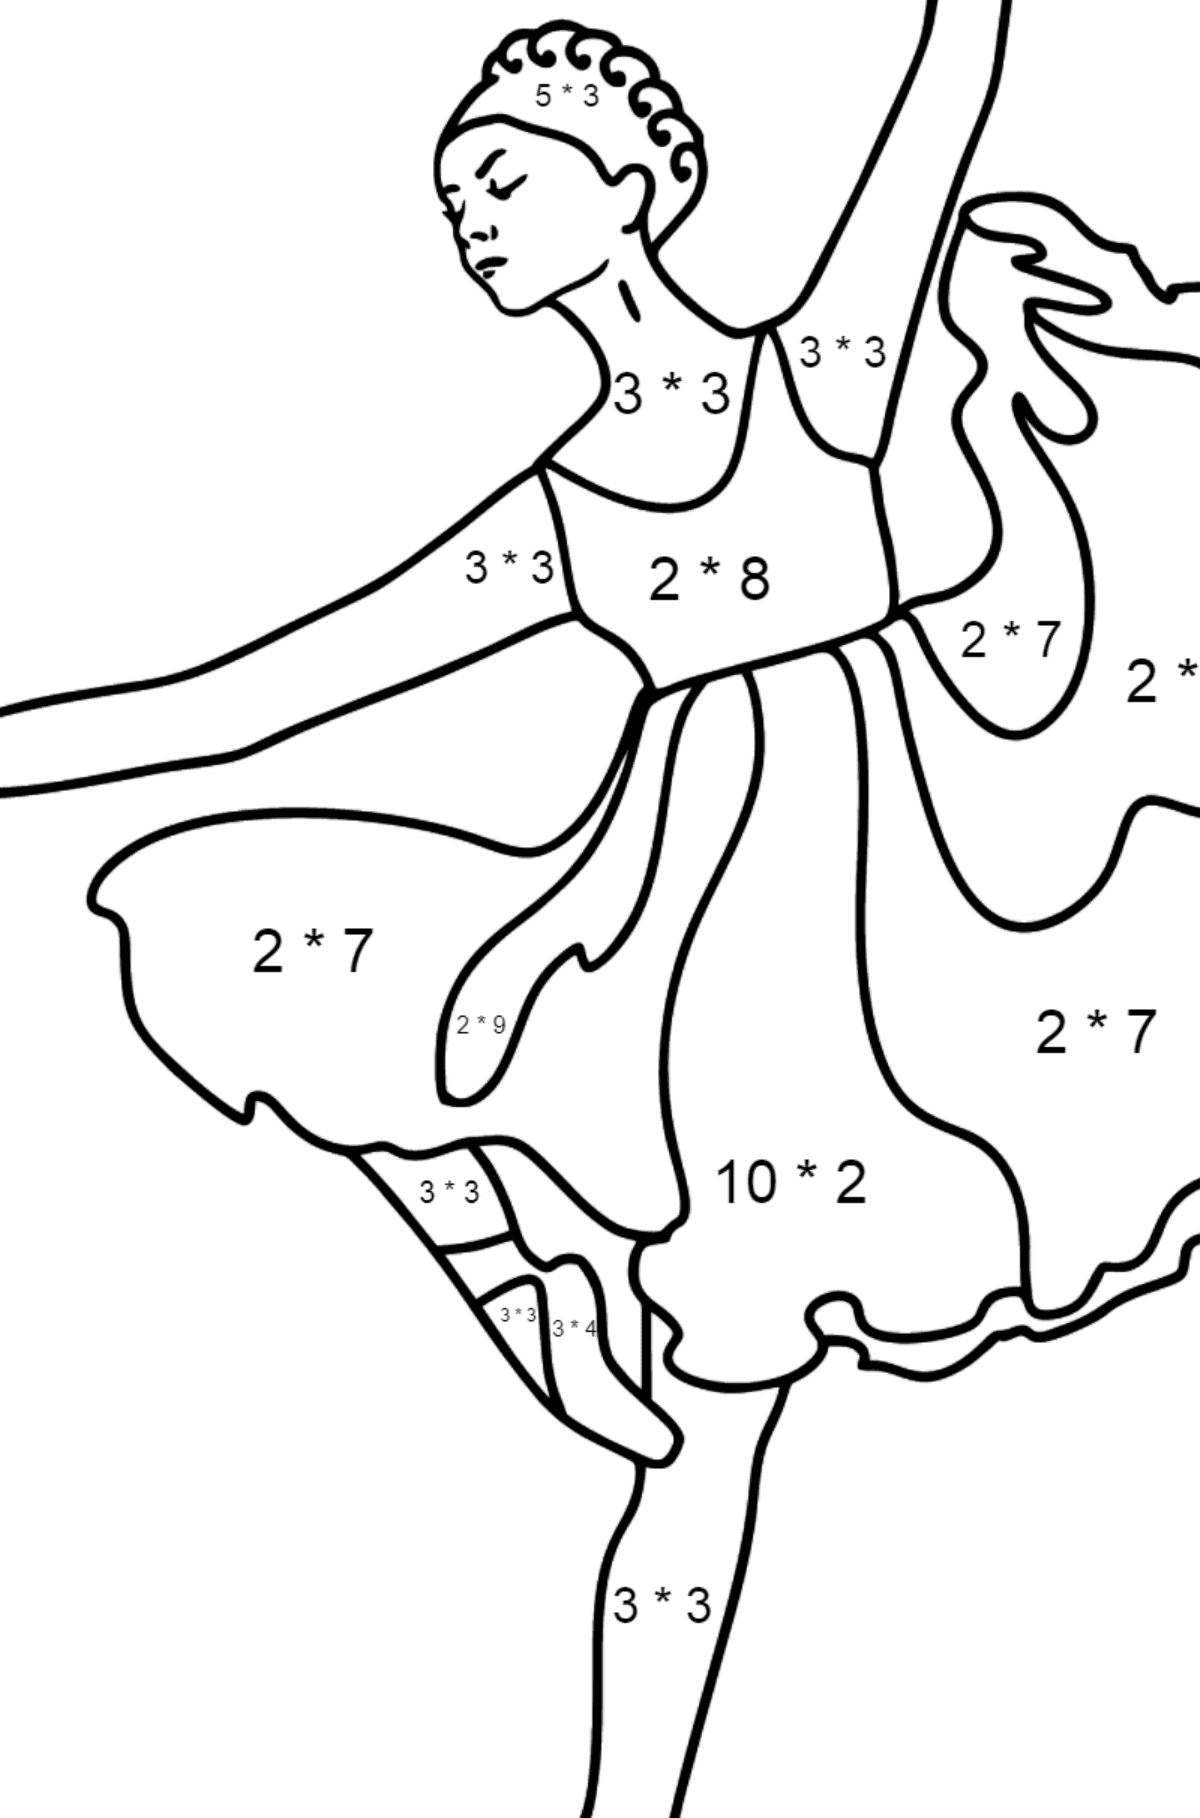 Dibujo para colorear - Bailarina con vestido lila - Colorear con Matemáticas - Multiplicaciones para Niños